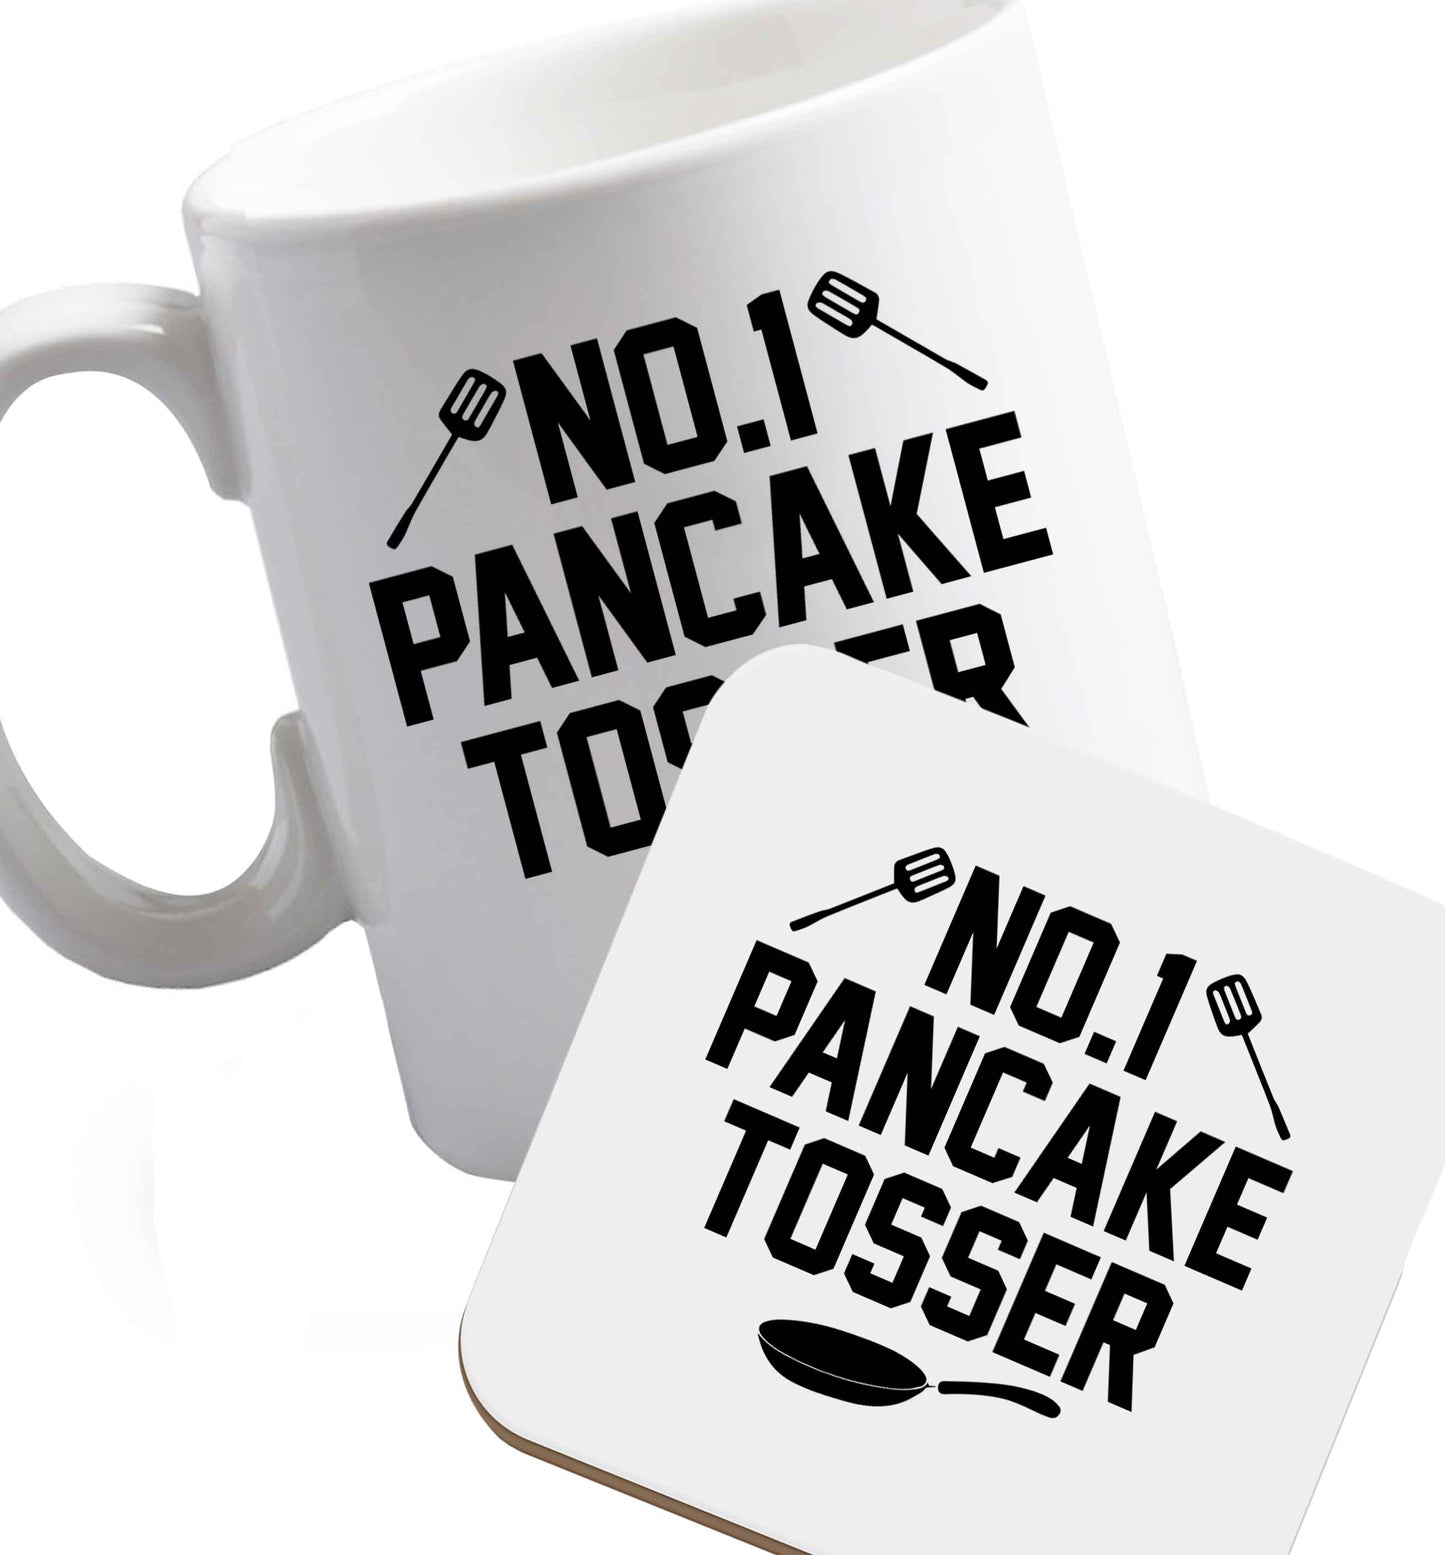 10 oz No.1 Pancake Tosser ceramic mug and coaster set right handed